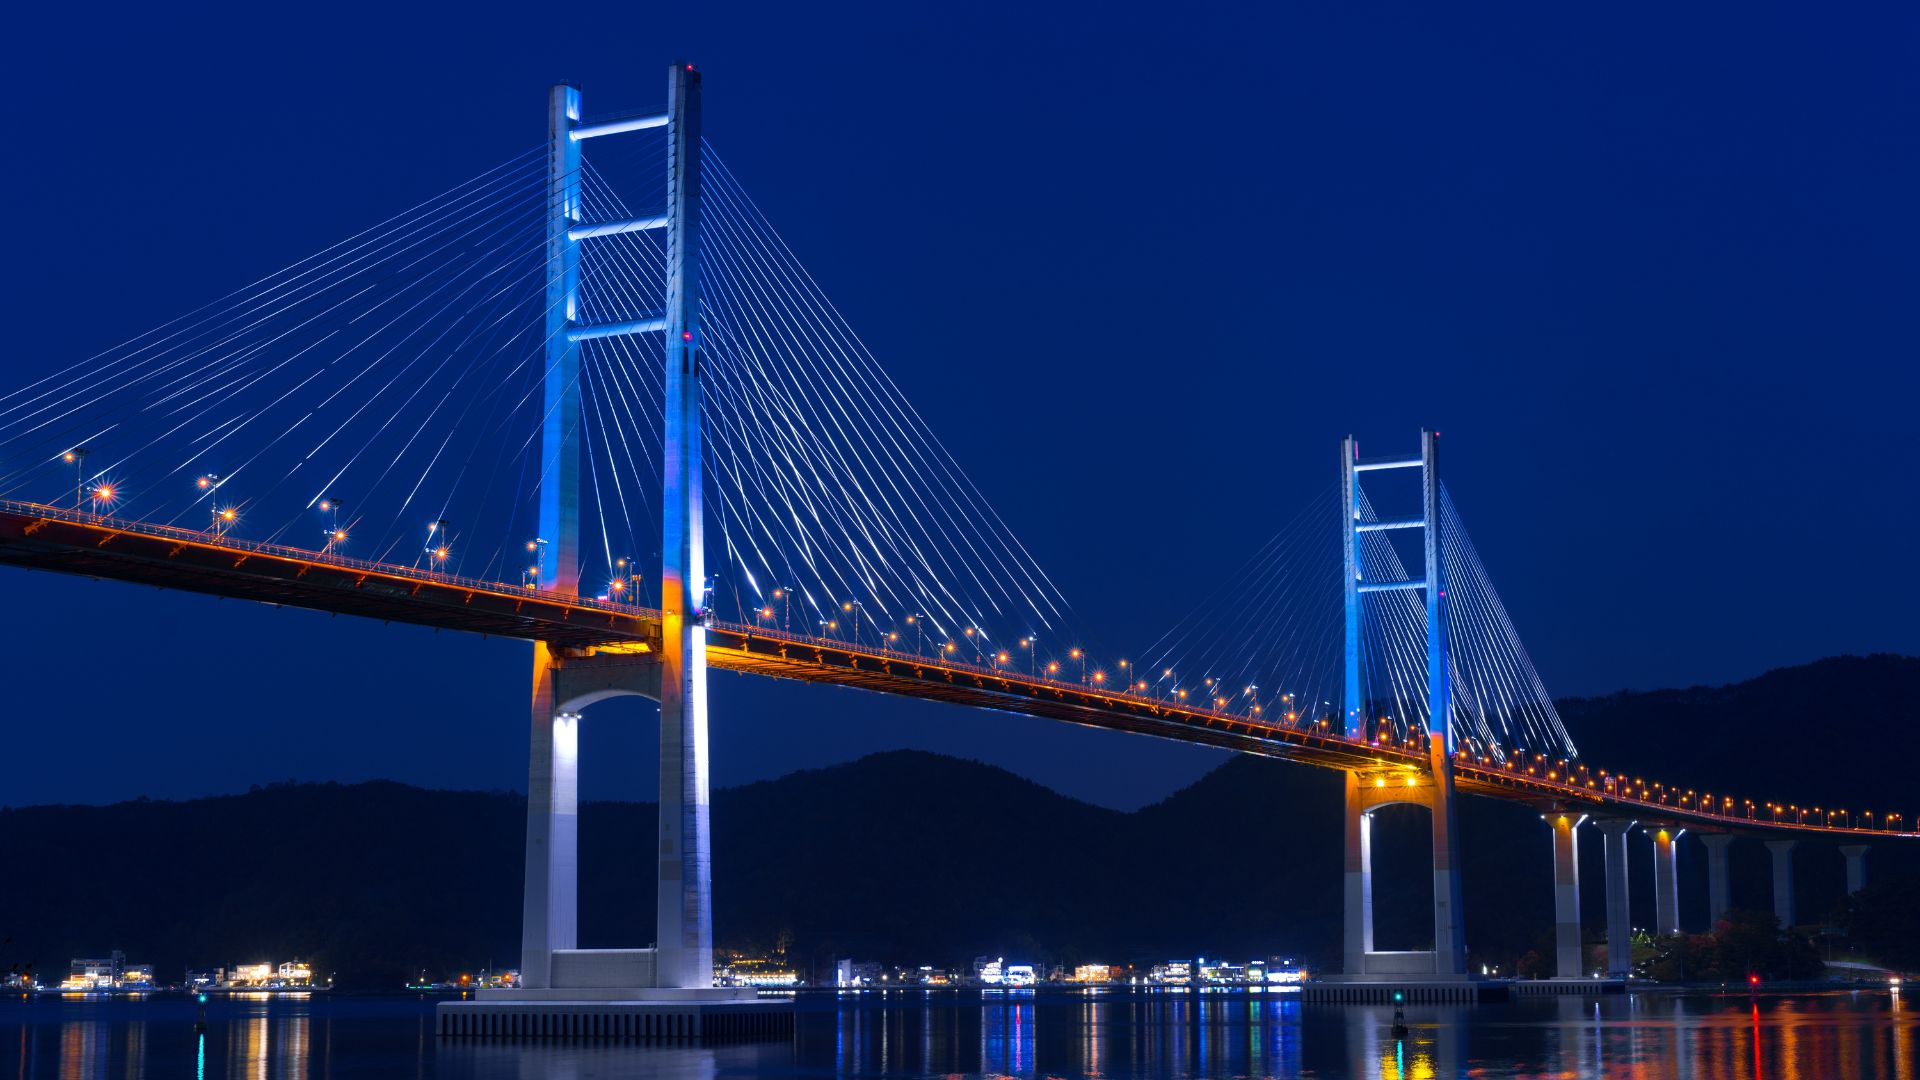 Bridges ensure deliverability